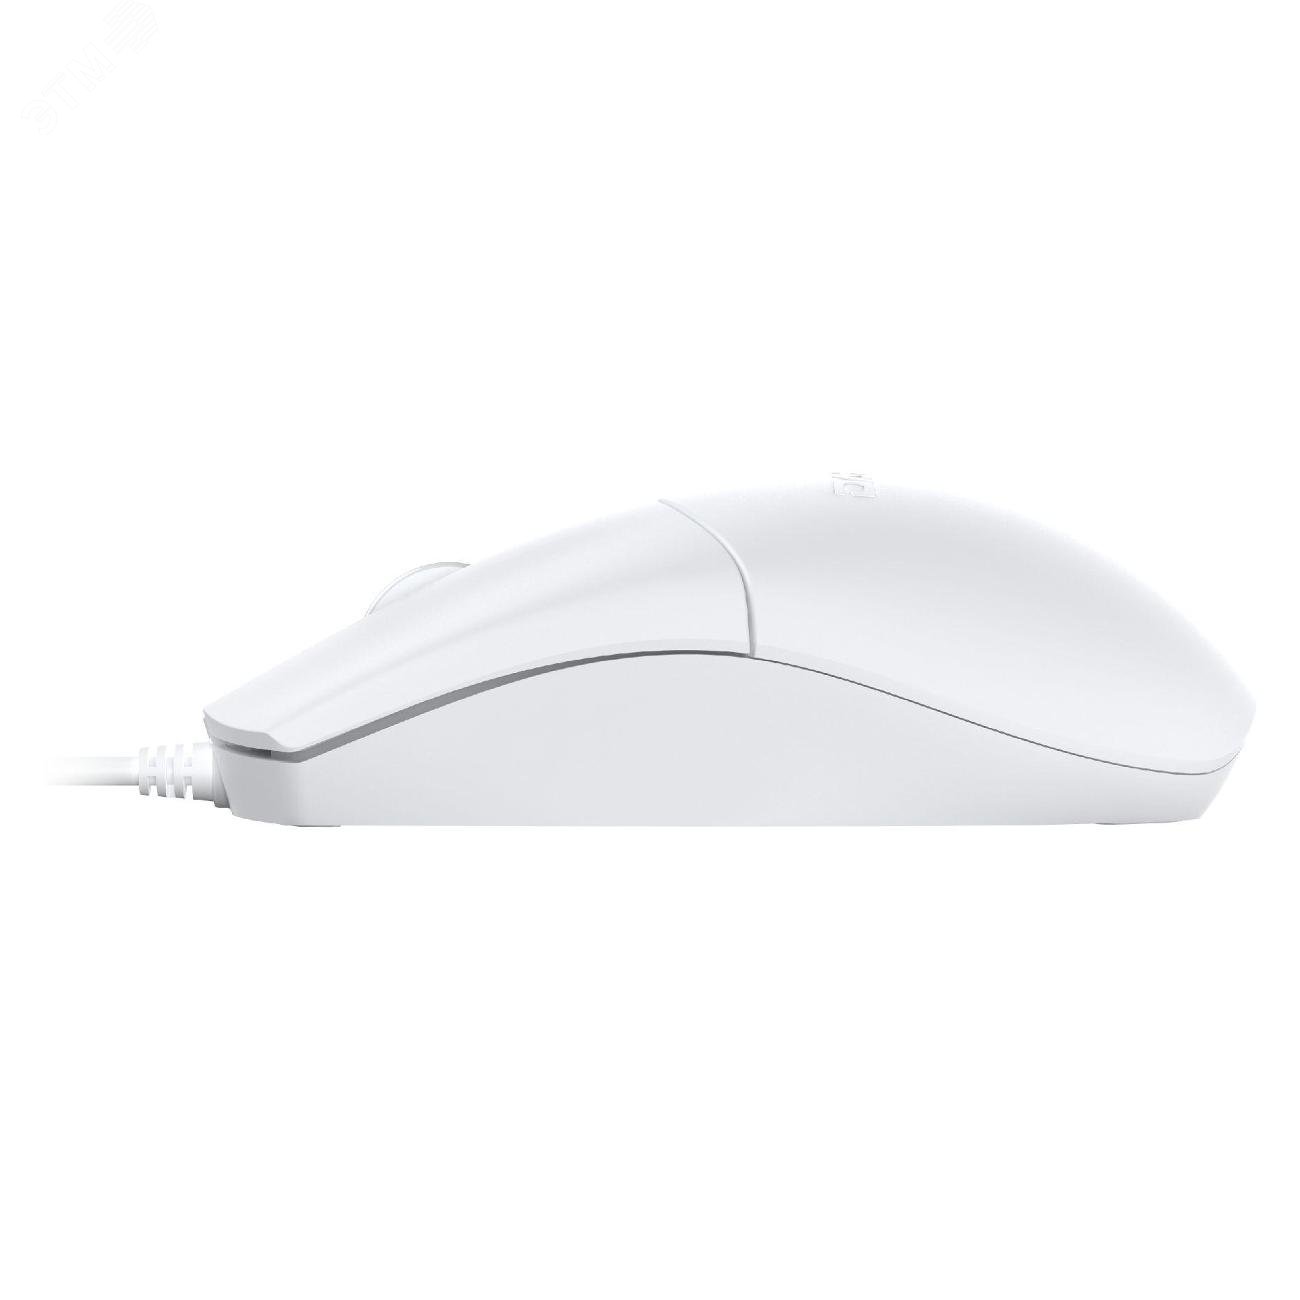 Комплект клавиатура + мышь проводной, USB белый MK185 White Dareu - превью 4